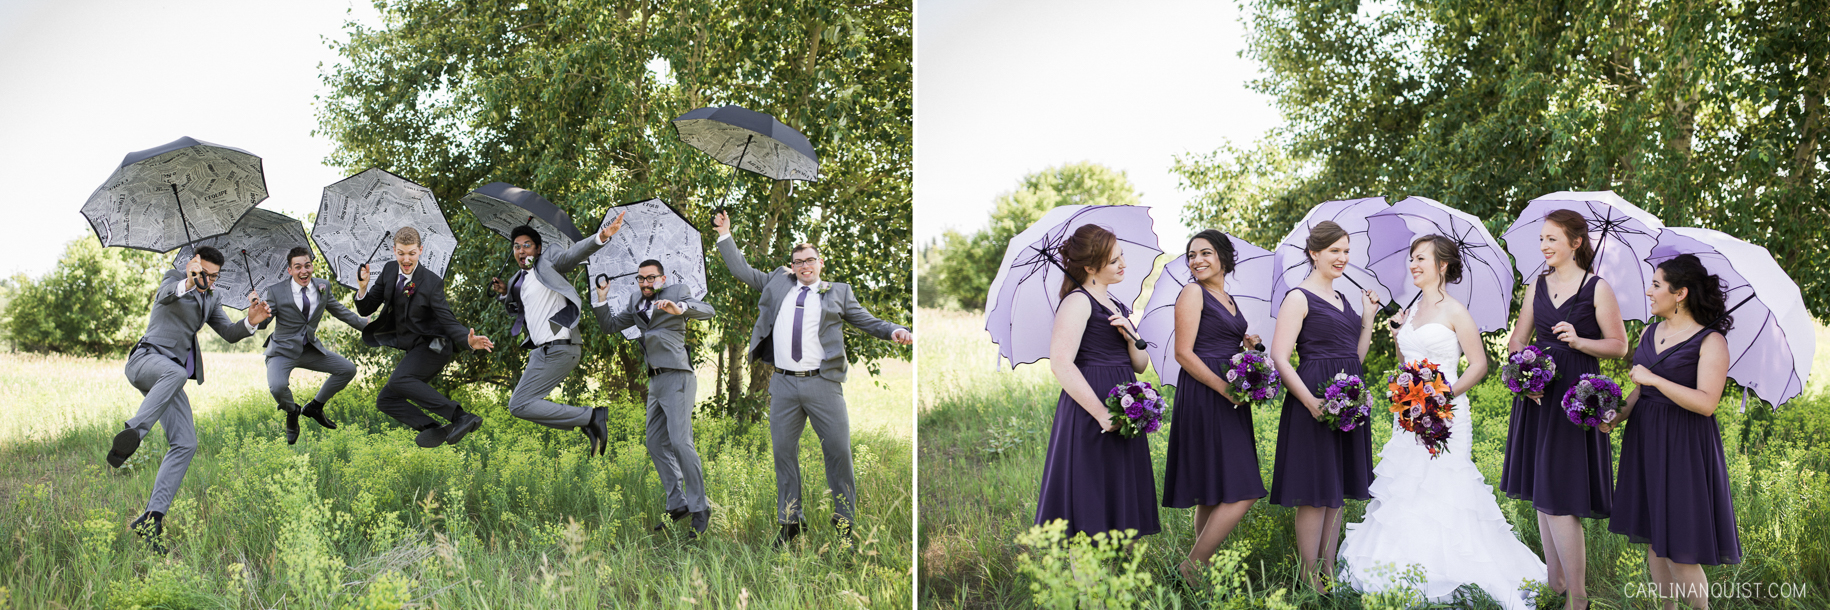 Bridal Party with Umbrellas